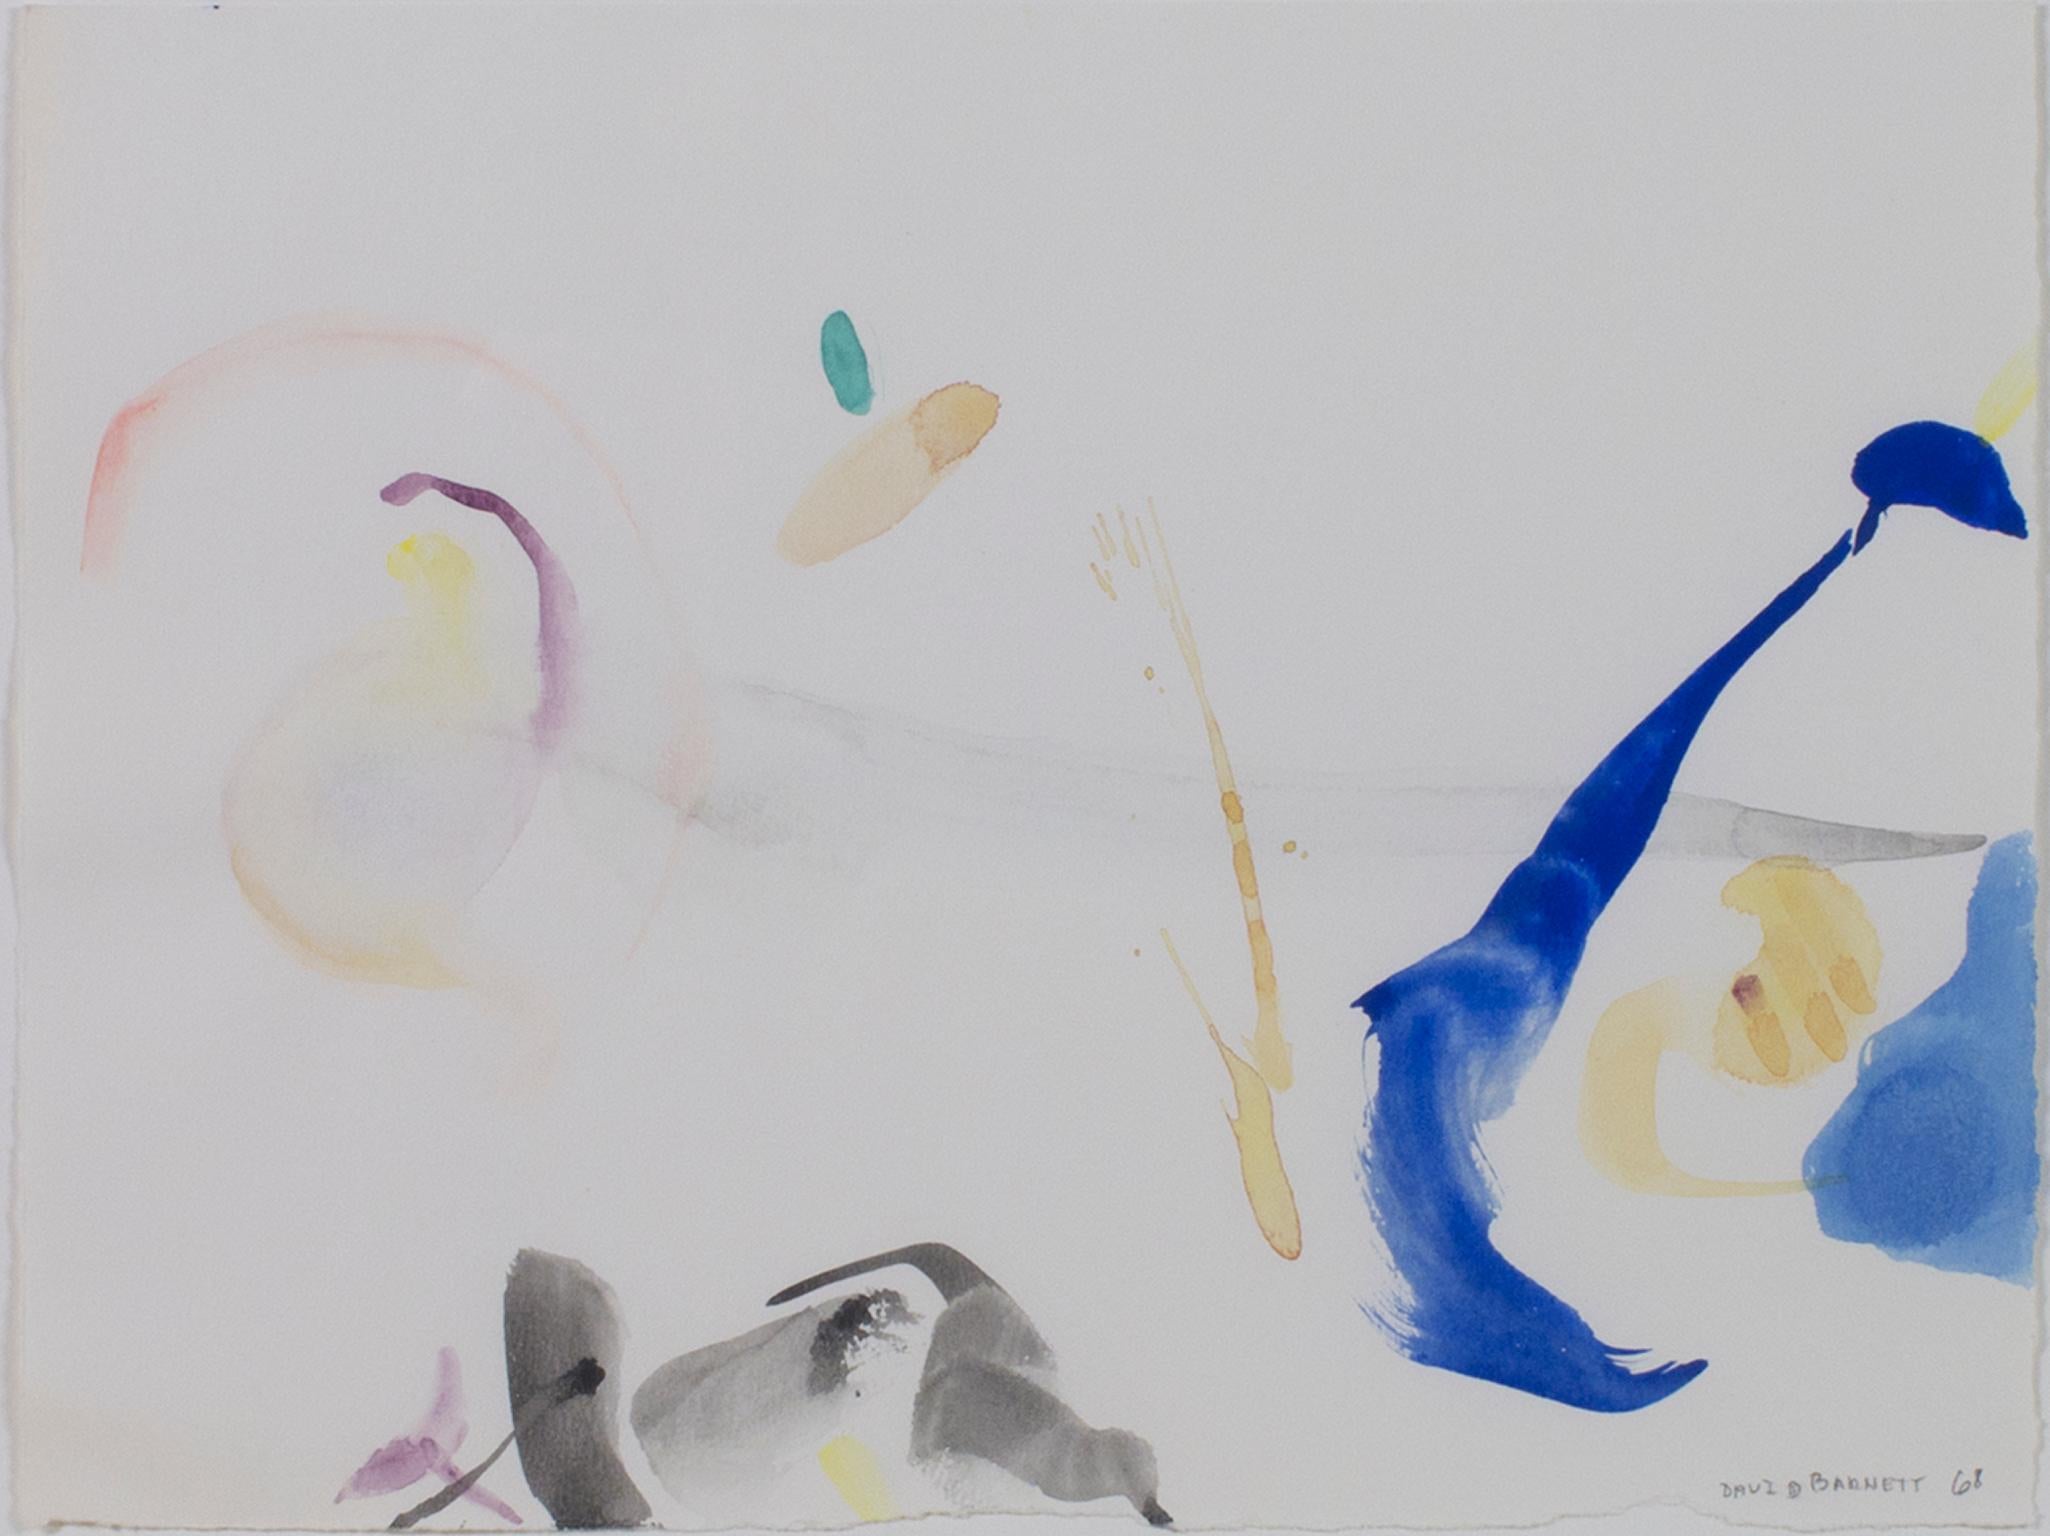 "Odyssée de l'espace" est une aquarelle originale de David Barnett. L'artiste a signé l'œuvre. Cette œuvre d'art présente des marques et des coups de pinceau abstraits en bleu, violet, gris, jaune et vert. 

Taille de l'œuvre : 9 7/8" x 12 7/8".